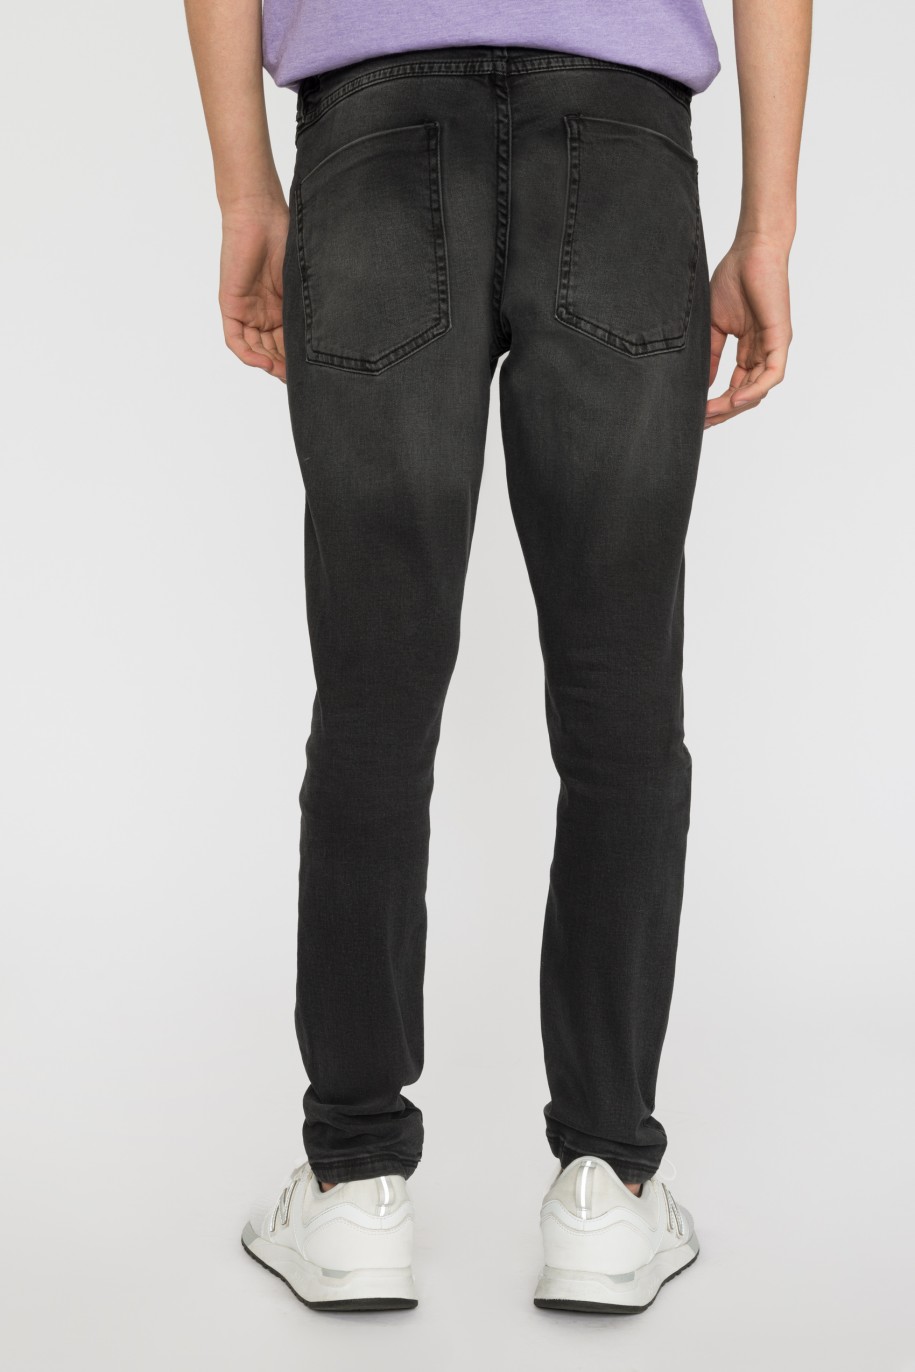 Czarne jeansowe zwężane ku dołowi spodnie dla chłopaka - 33444